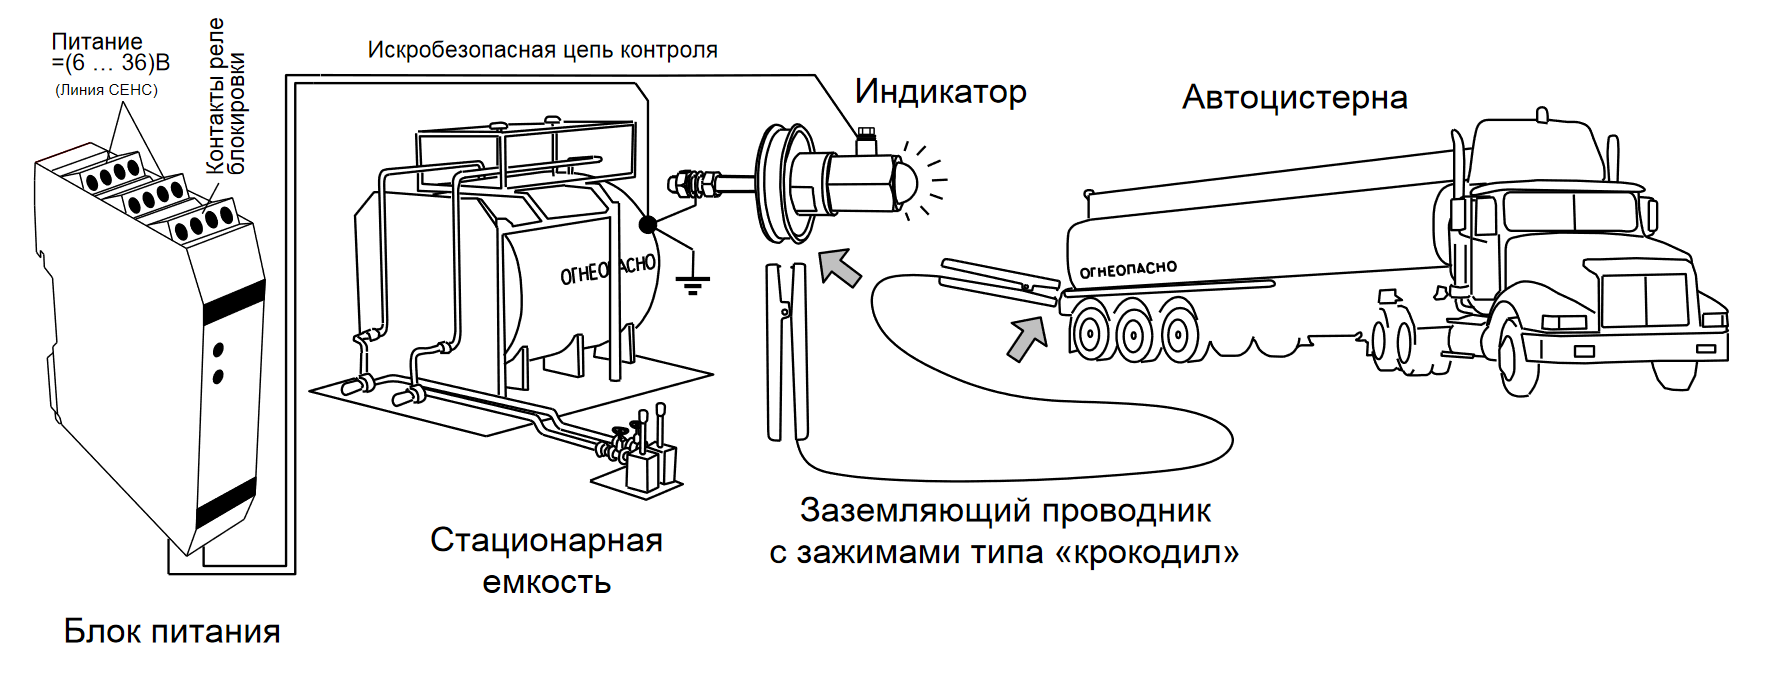 Устройство УЗА-24В-ЛИН-Р установлено на пункте слива-налива